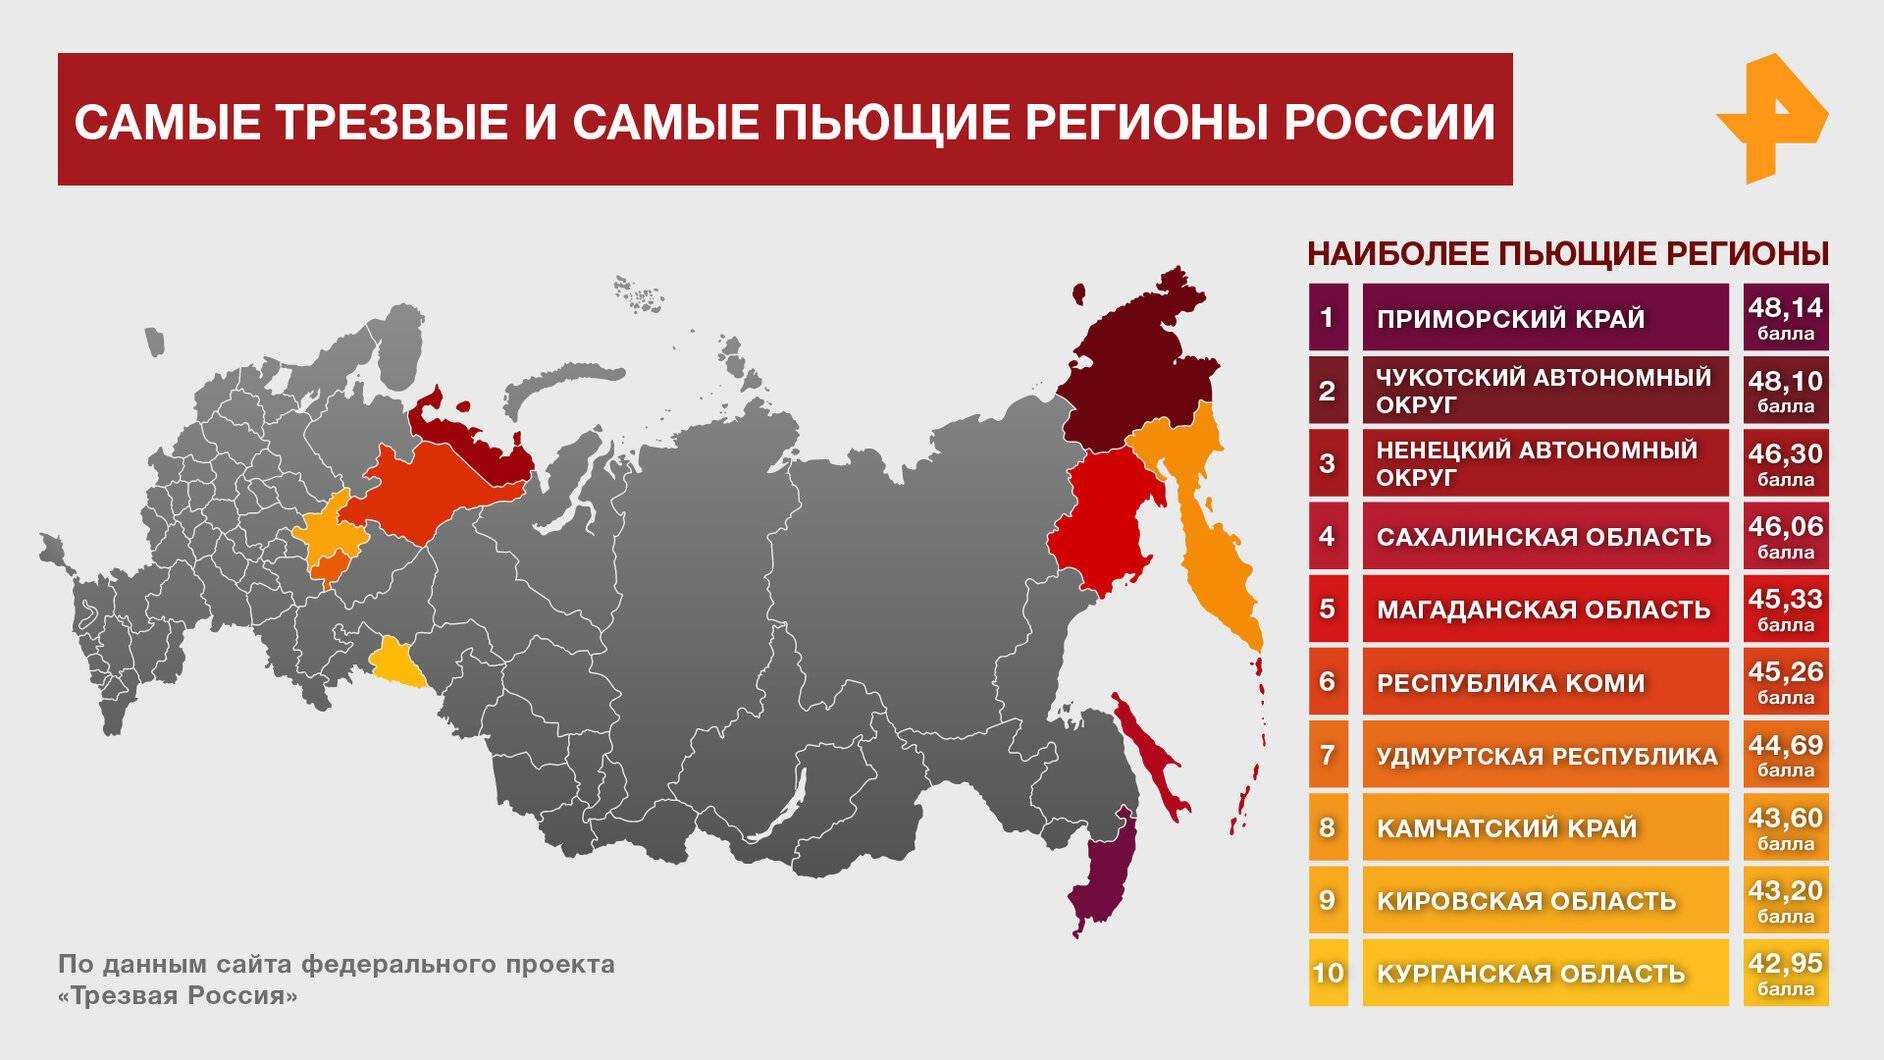 Саратов возглавил рейтинг самых пьющих городов россии